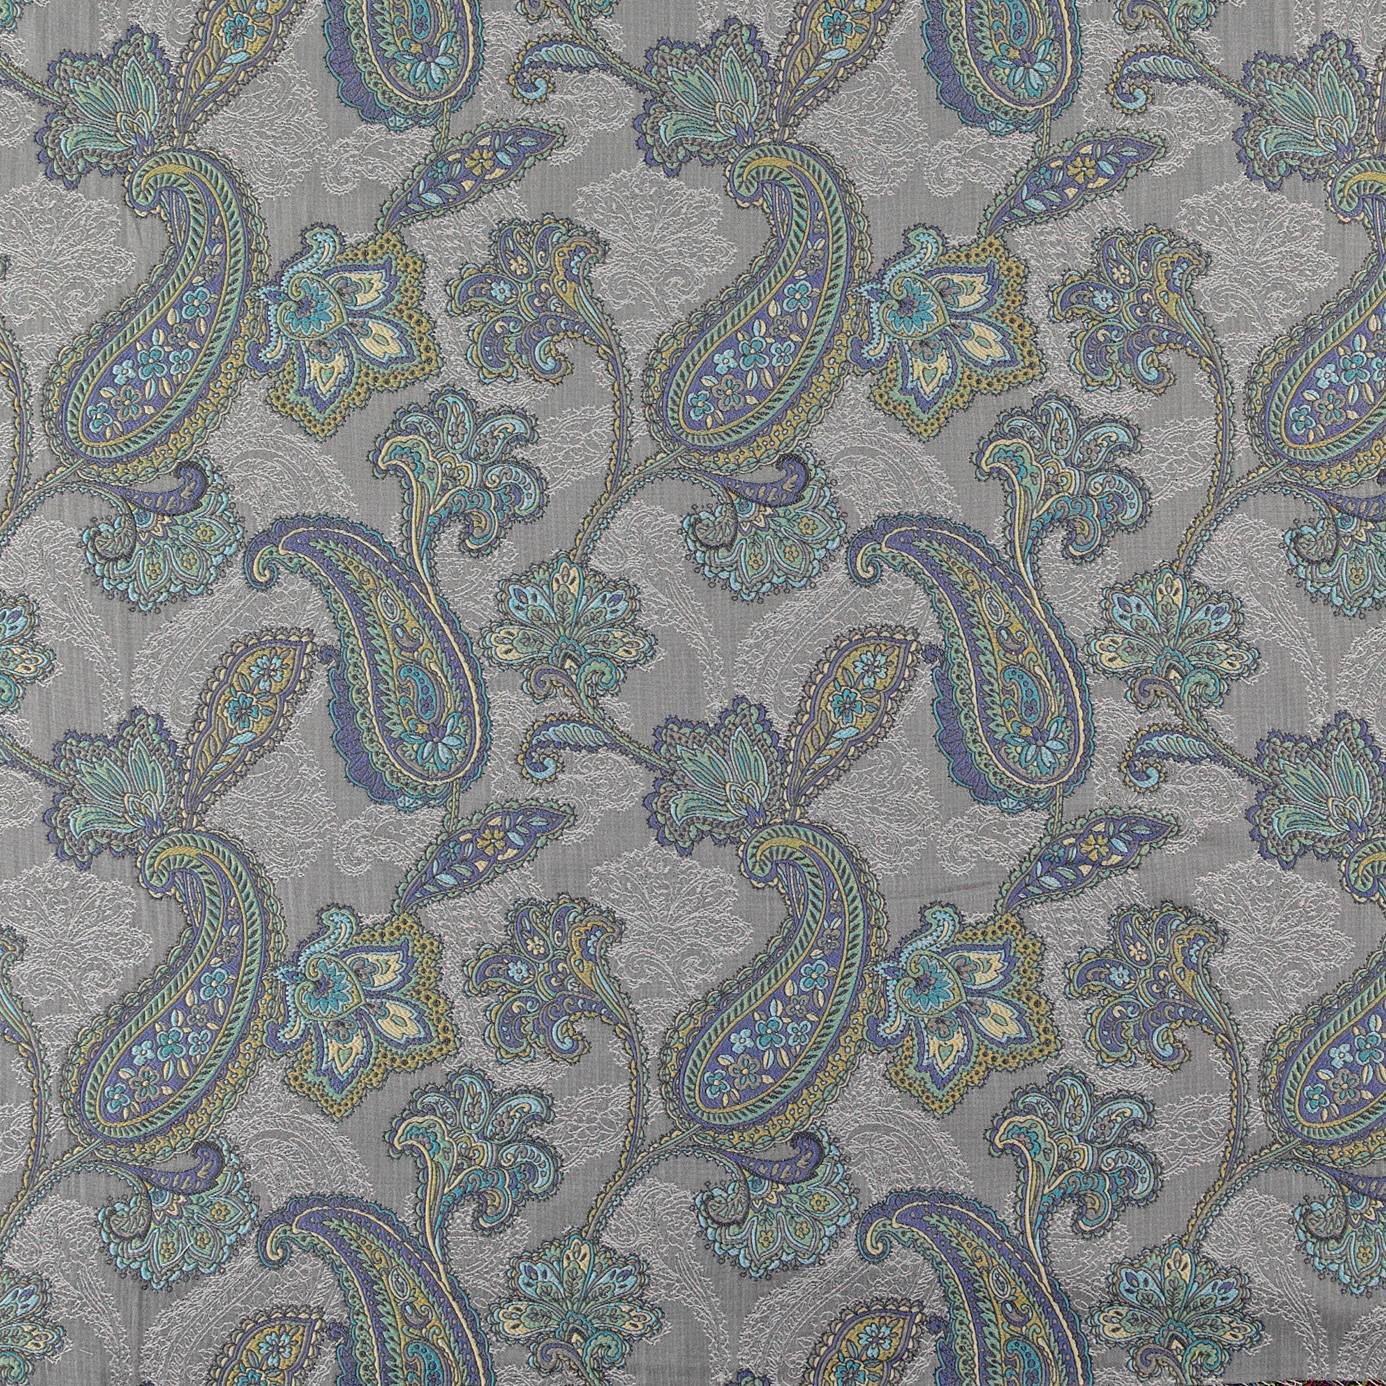 Campinola Fabric - Peacock (CAMPINOLA05) - Wemyss Amalfi Fabrics Collection